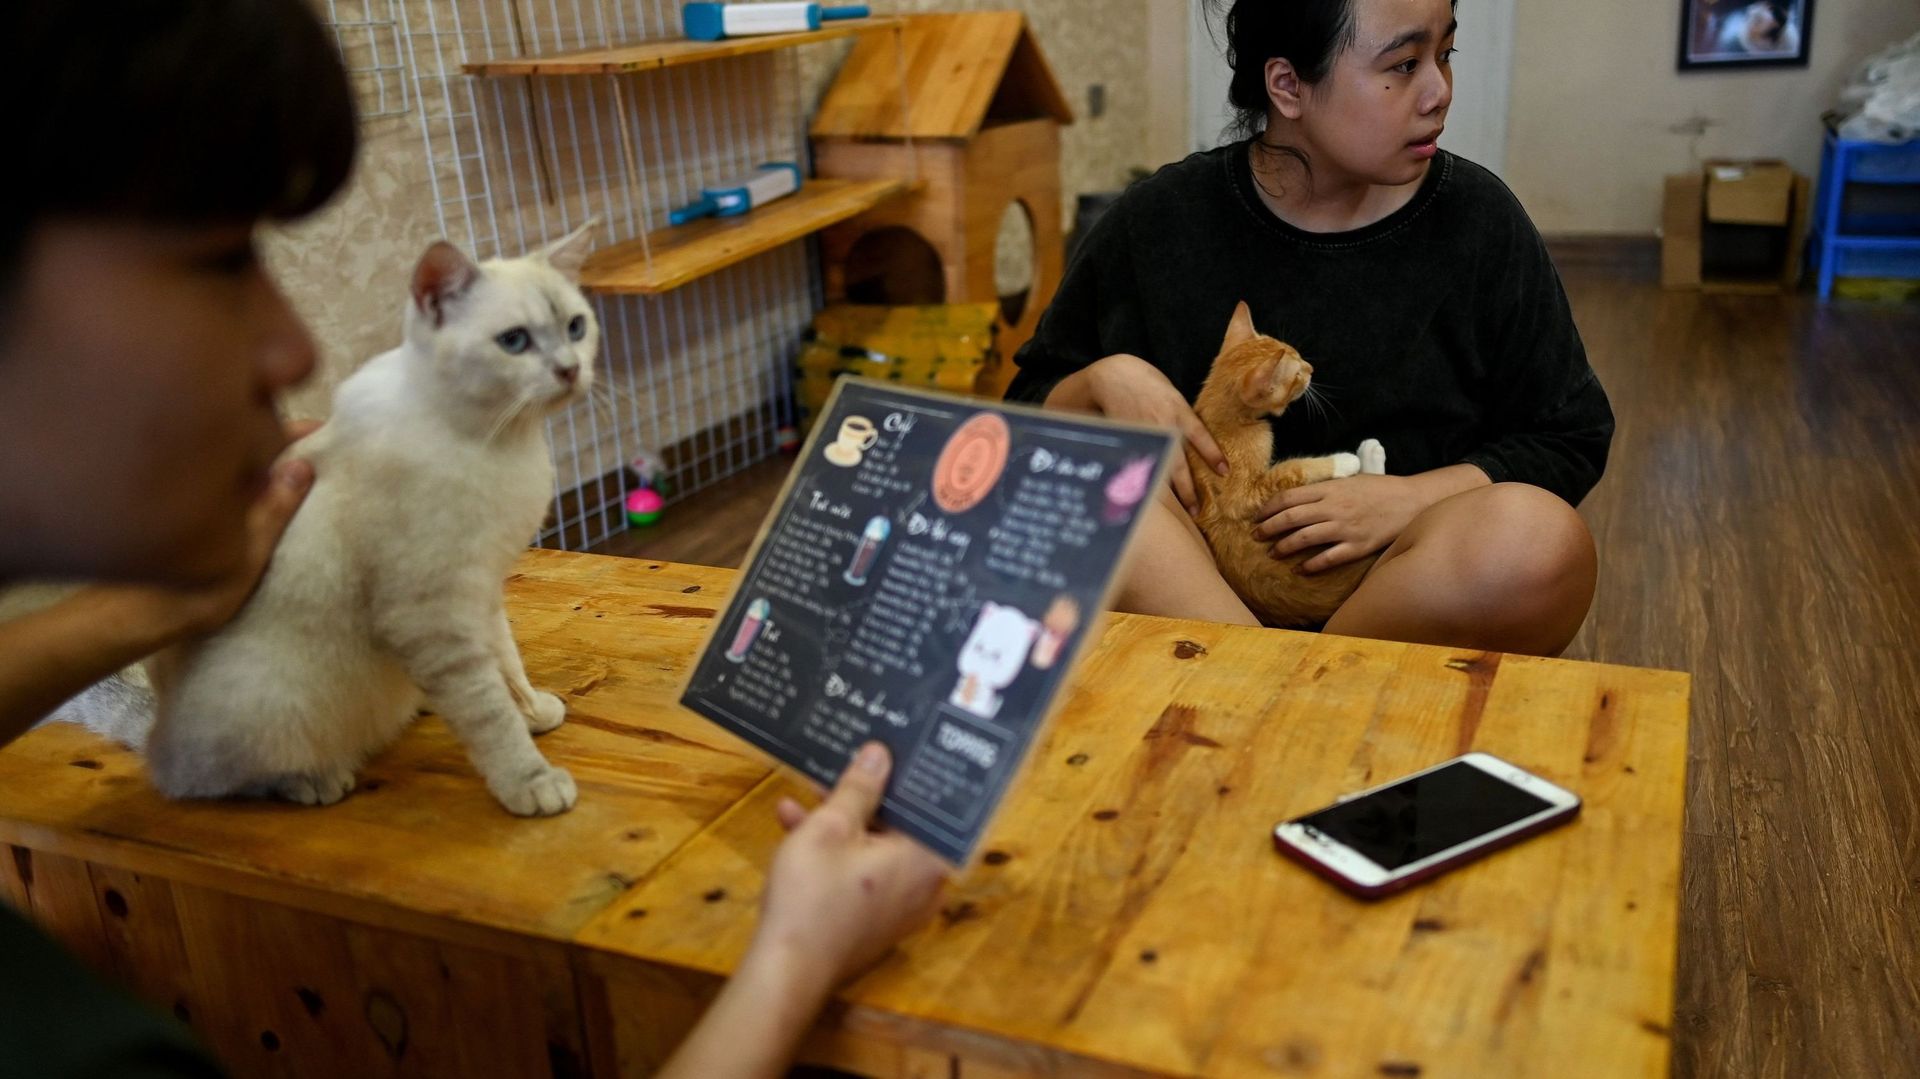 Au Vietnam, un café recueille des chats à adopter